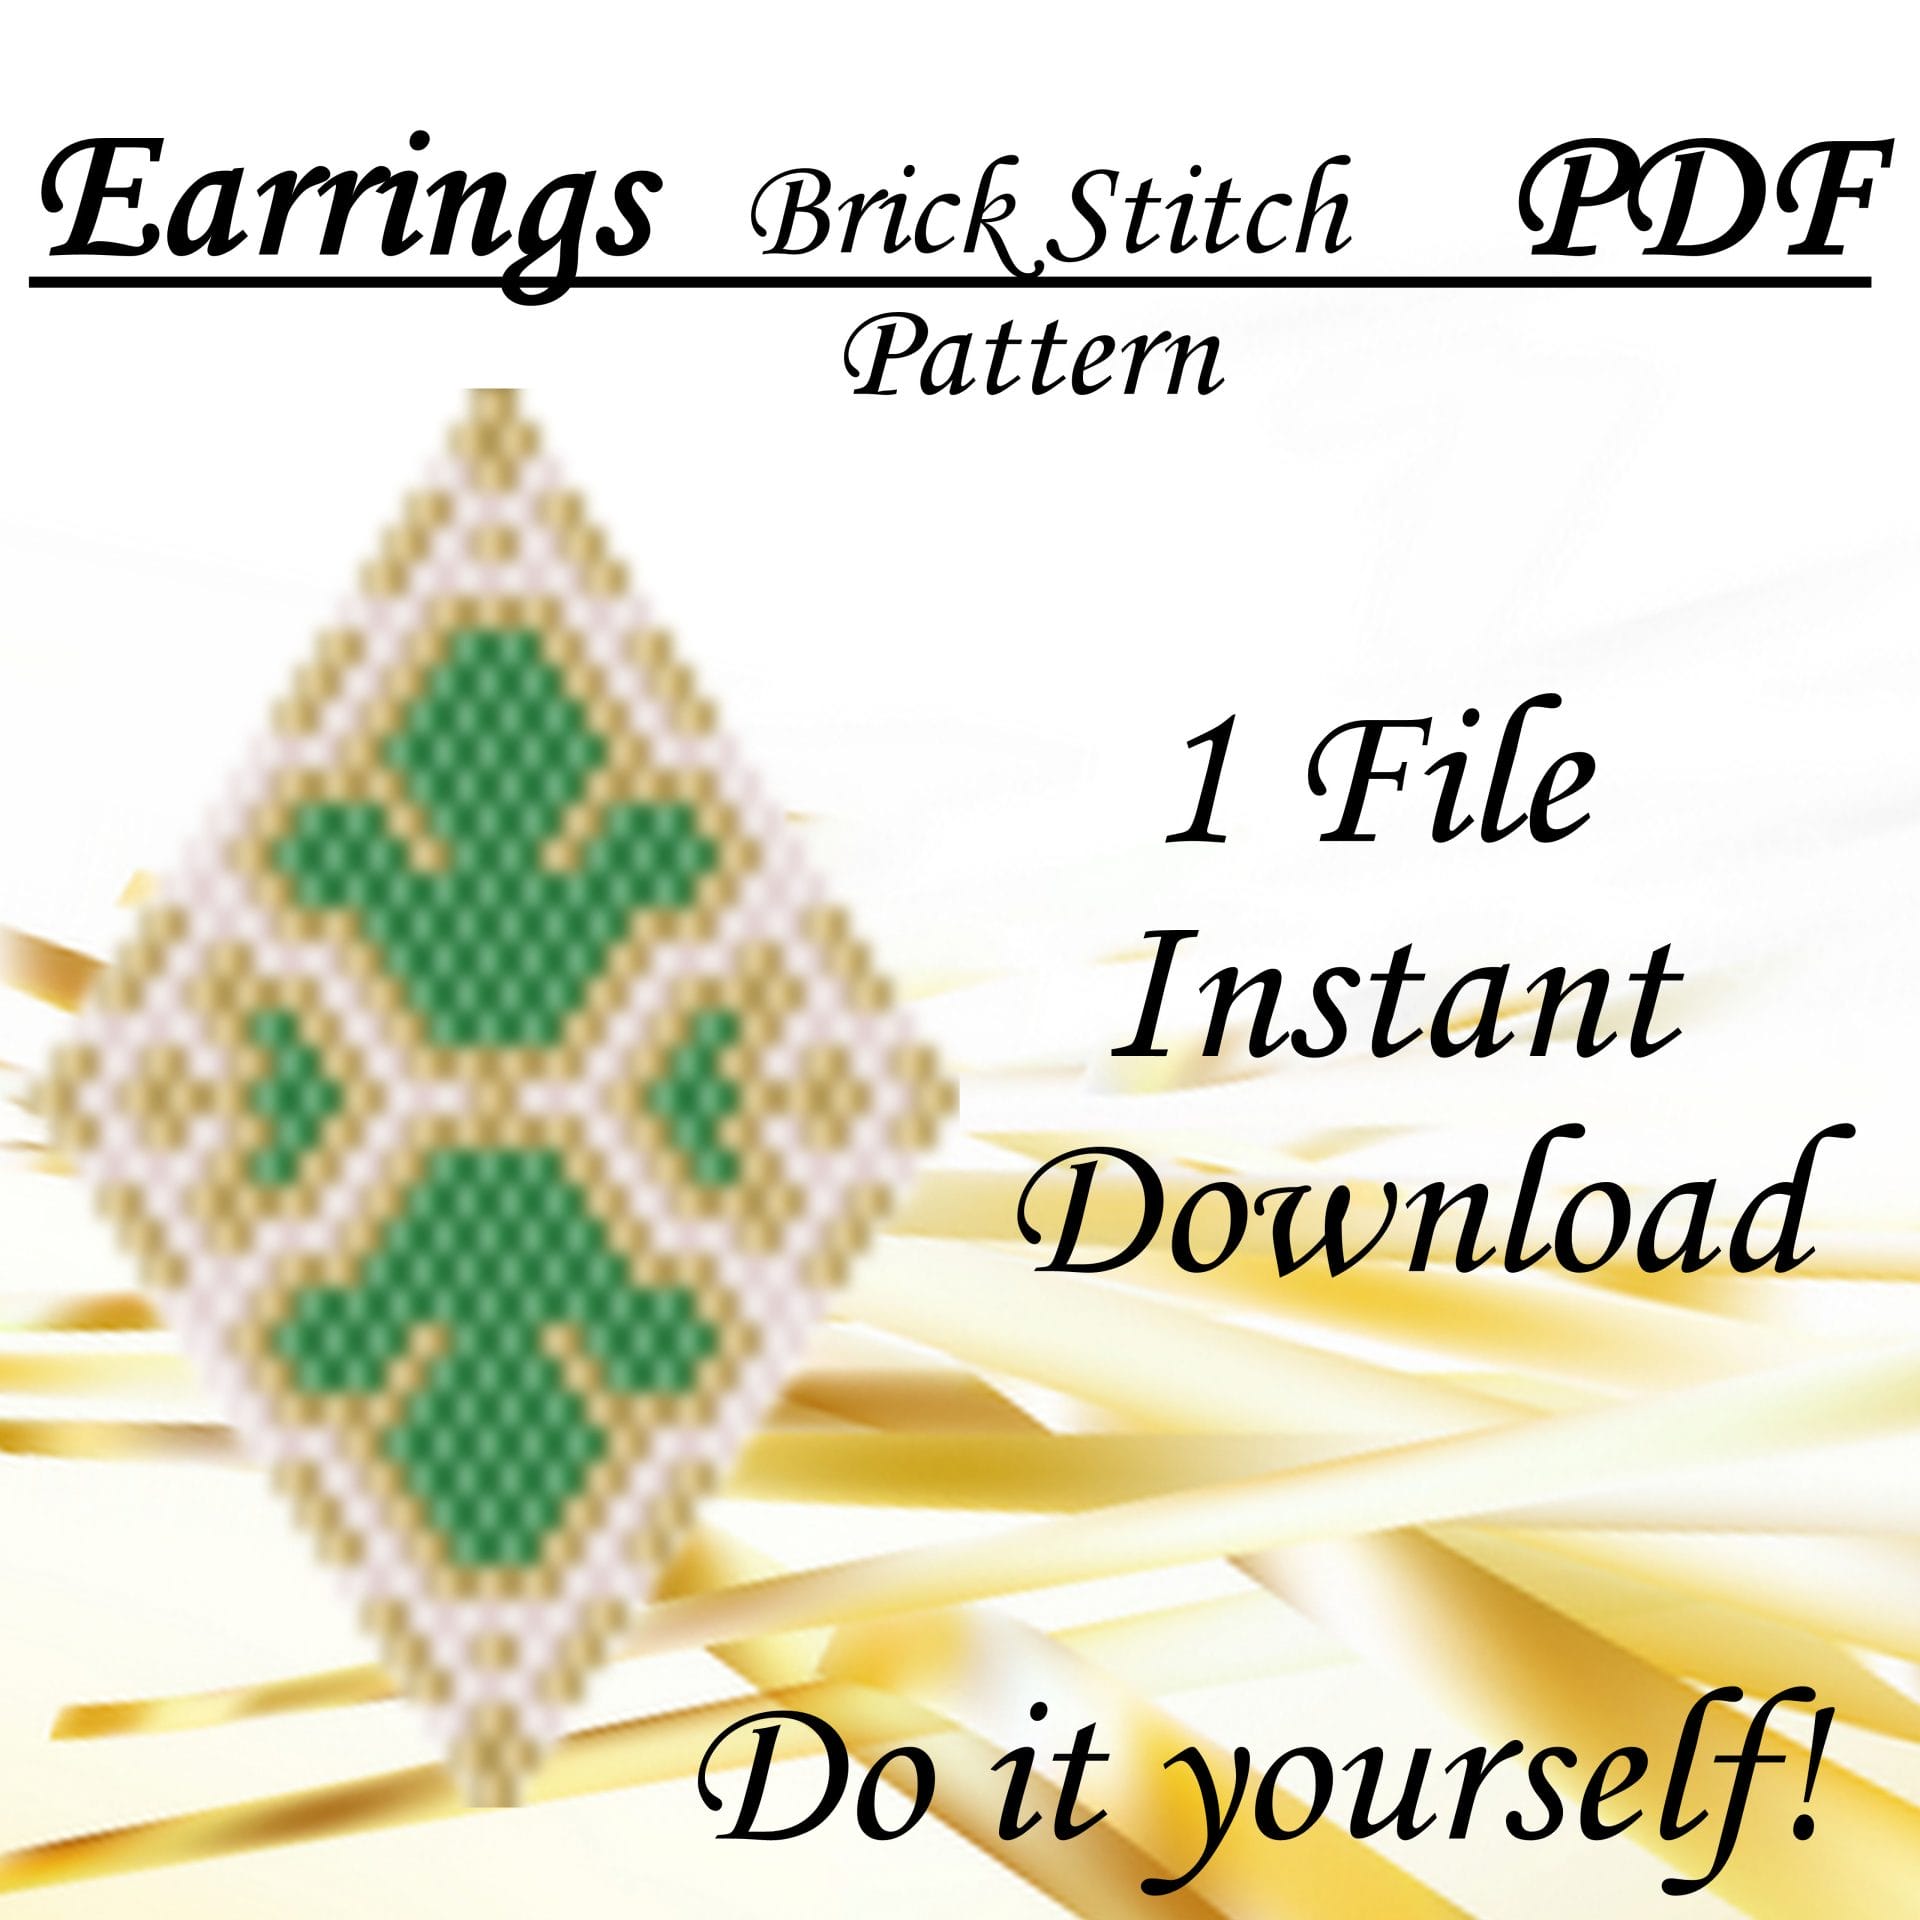 Earrings beading pattern Brick stitch pattern PDF file